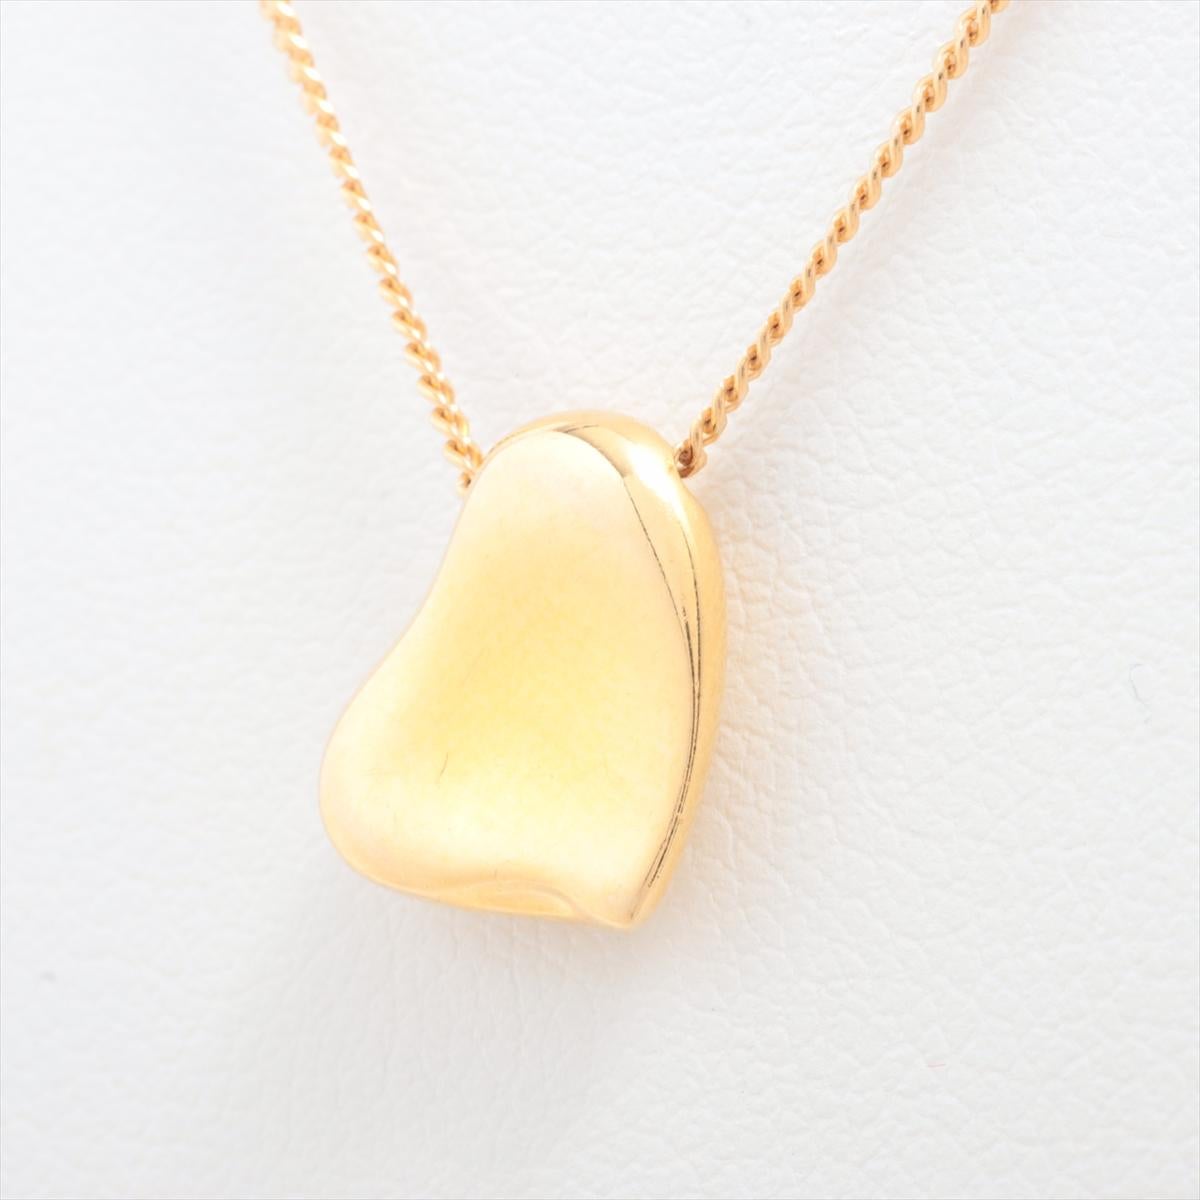 La collection Tiffany & Co. Le collier à pendentif cœur plein en or d'Elega Peretti est un bijou intemporel et élégant qui respire la sophistication et le charme. Conçu par la célèbre designer Elsa Peretti, ce collier est orné d'un délicat pendentif